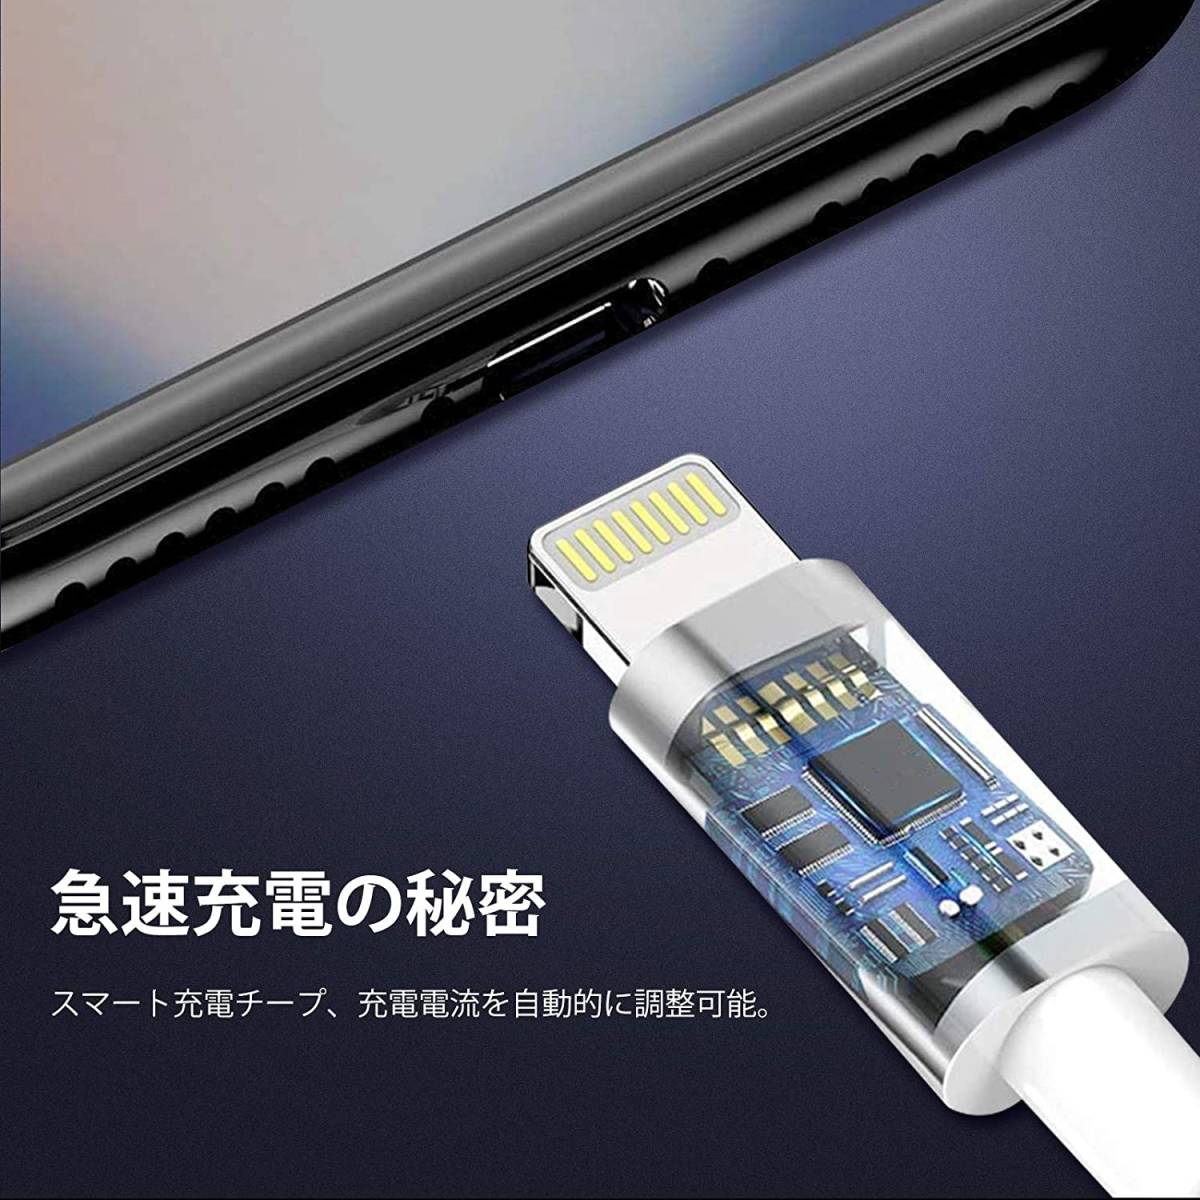 【大特価】iPhone 充電ケーブル ライトニングケーブル 1M 6本セット アイフォン USB 充電コード Lightning ケーブル_画像7